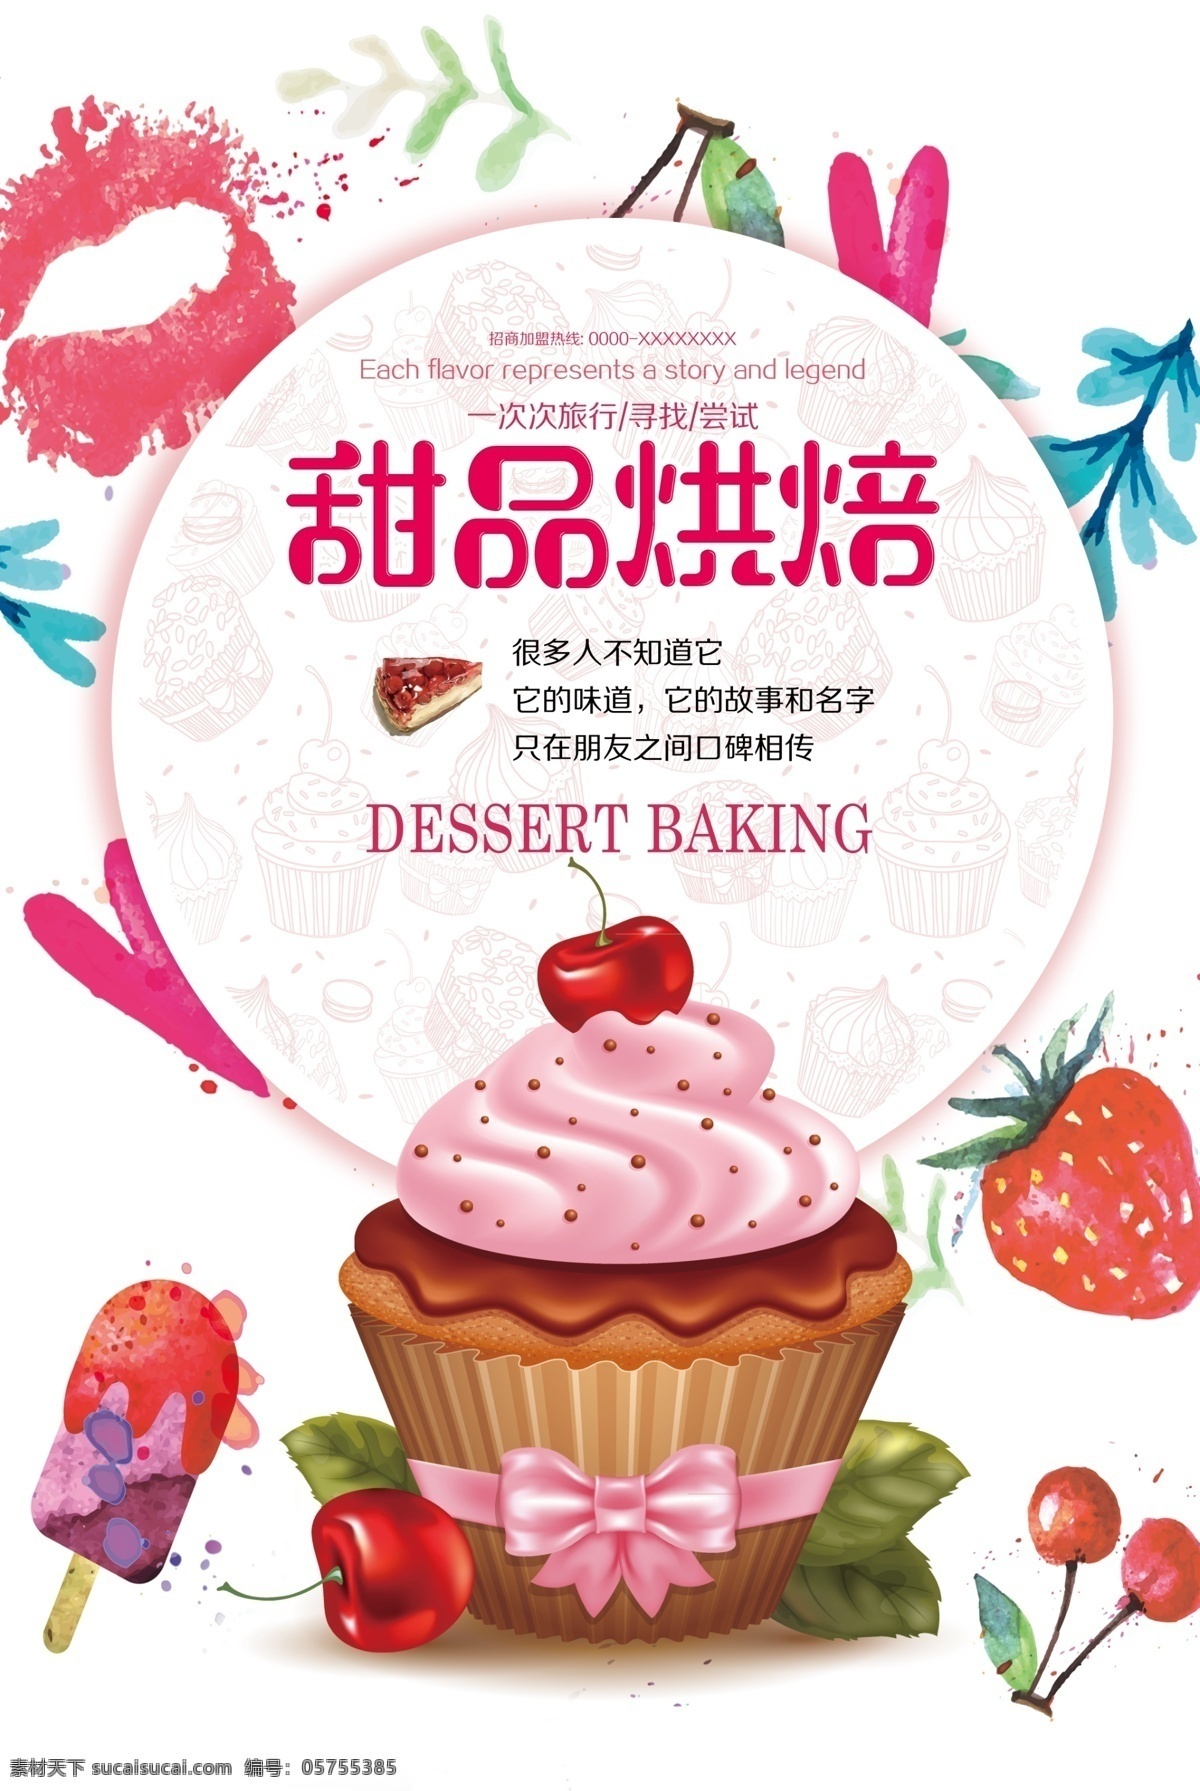 蛋糕海报 蛋糕 烘焙坊 甜品 面包 面包坊 diy蛋糕 甜品烘焙 宣传单 dm宣传单